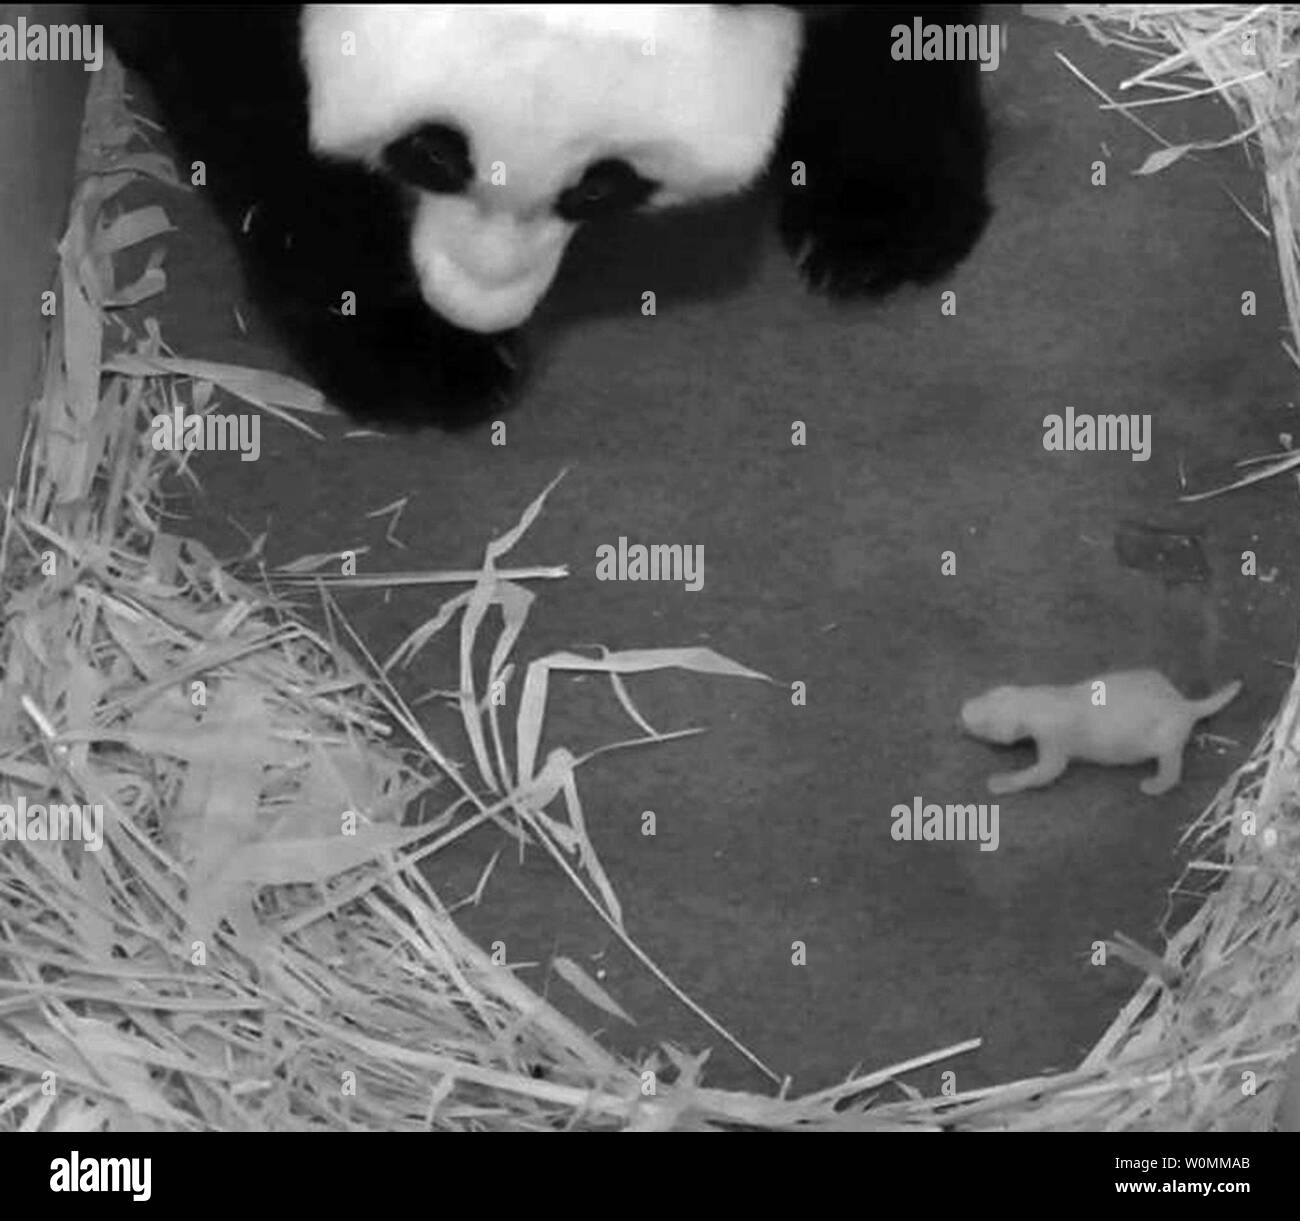 Mutter panda Mei Xiang (Mai - SHONG) wacht über Ihr neugeborenes Cub in diesem Foto, das von der Smithsonian National Zoo am 5. September 2013 veröffentlicht. Wissenschaftler in der Mitte des Smithsonian Erhaltung der Biologie Institut für Erhaltung und Evolutionäre Genetik bestätigt, dass der Panda cub an der National Zoo geboren 12.08.23 weiblich ist. Eine DNA-Analyse ergab, dass der Zoo's Panda Tian Tian (t-YEN t-YEN) Trainingsgeländes der Vater ist. Wissenschaftler bestätigten auch die zweite stillborn cub Mei Xiang am 12.08.24. Auch eine Frau war, und auch von Tian Tian. Die Jungen waren zweieiige Zwillinge. Mei Stockfoto